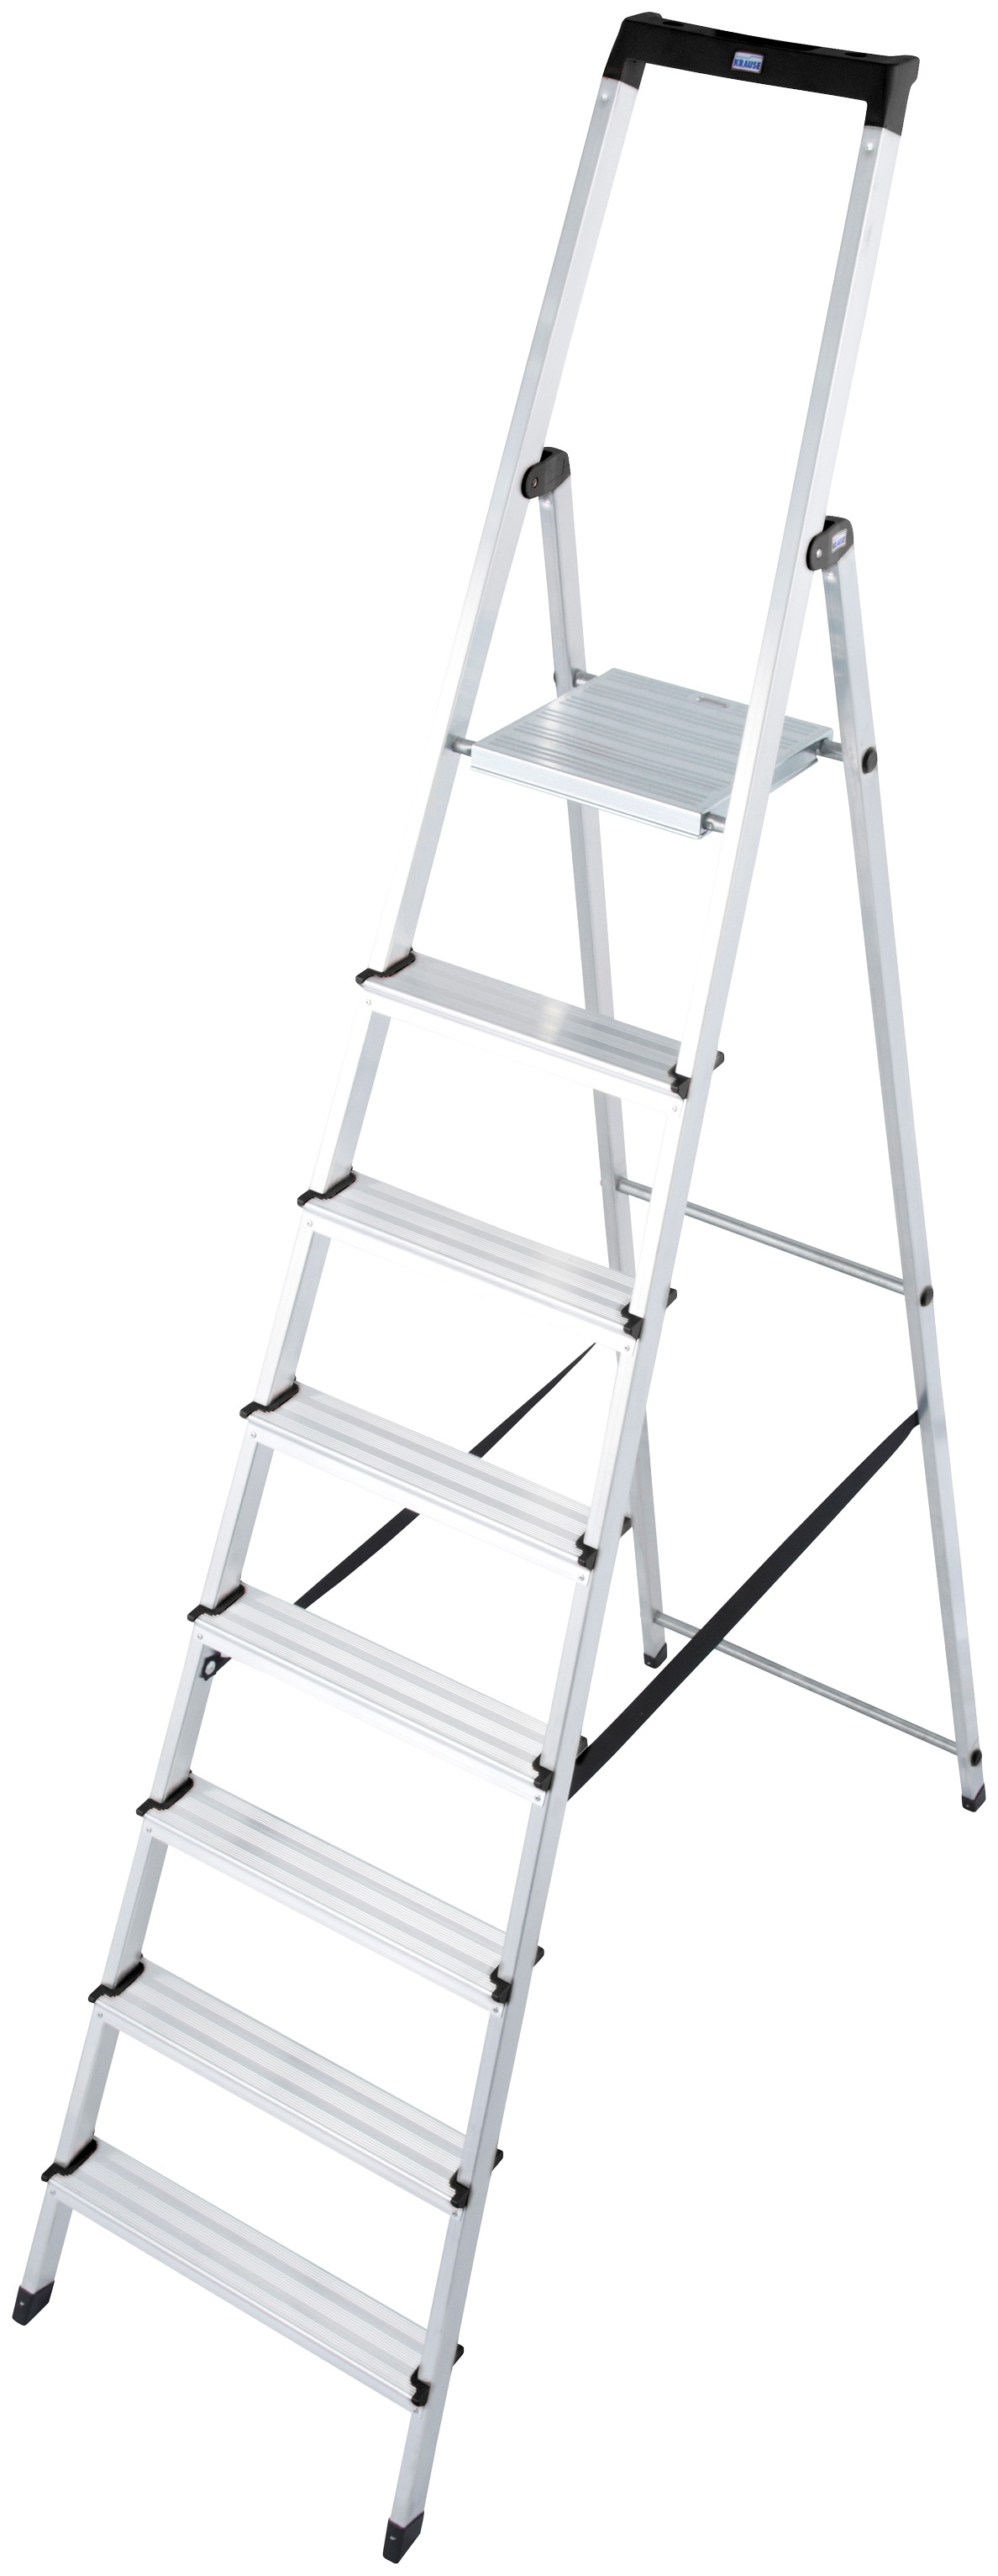 KRAUSE Stehleiter "Solidy", Aluminium, 1x8 Stufen, Arbeitshöhe ca. 370 cm